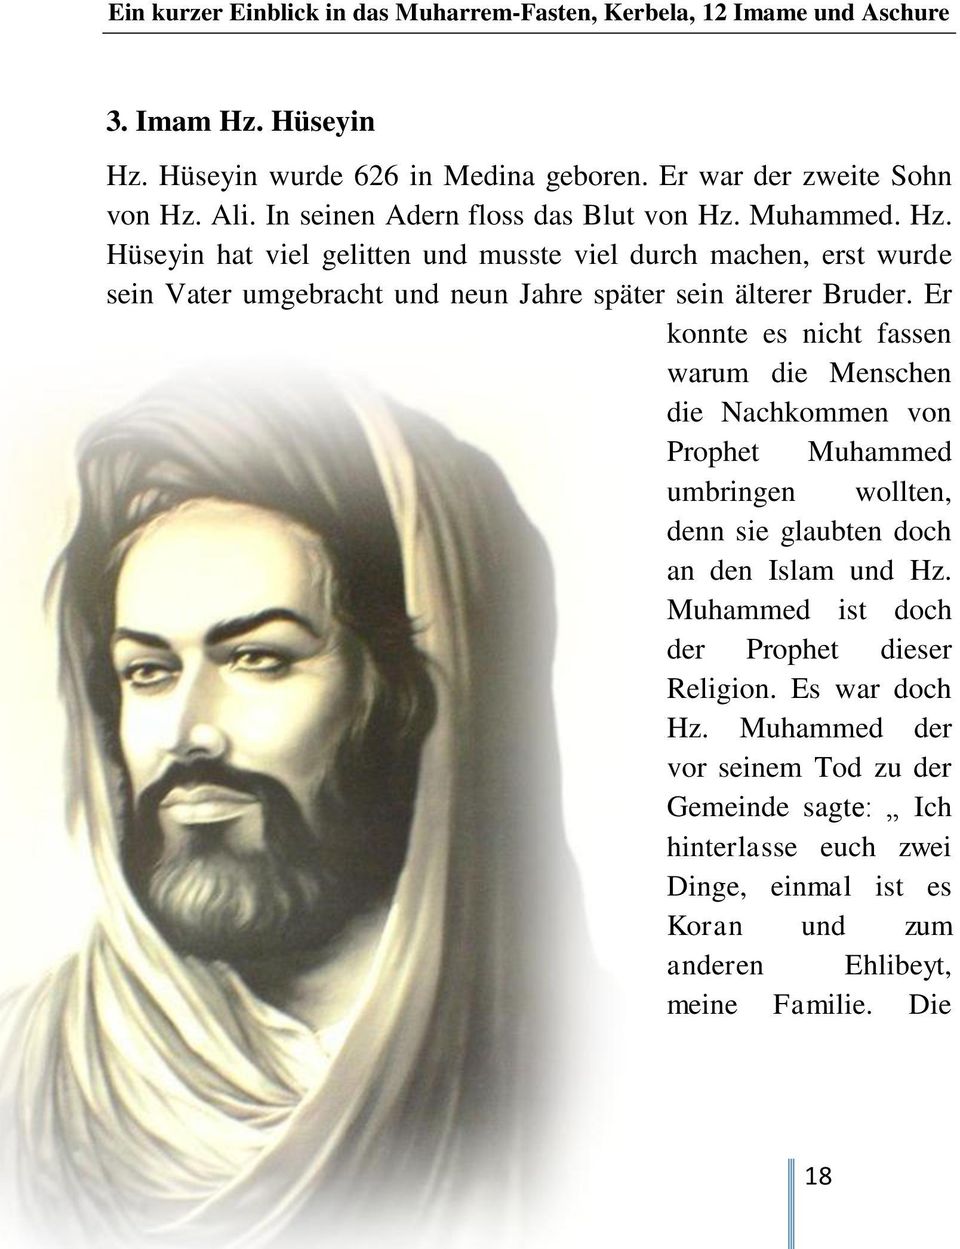 Muhammed ist doch der Prophet dieser Religion. Es war doch Hz.